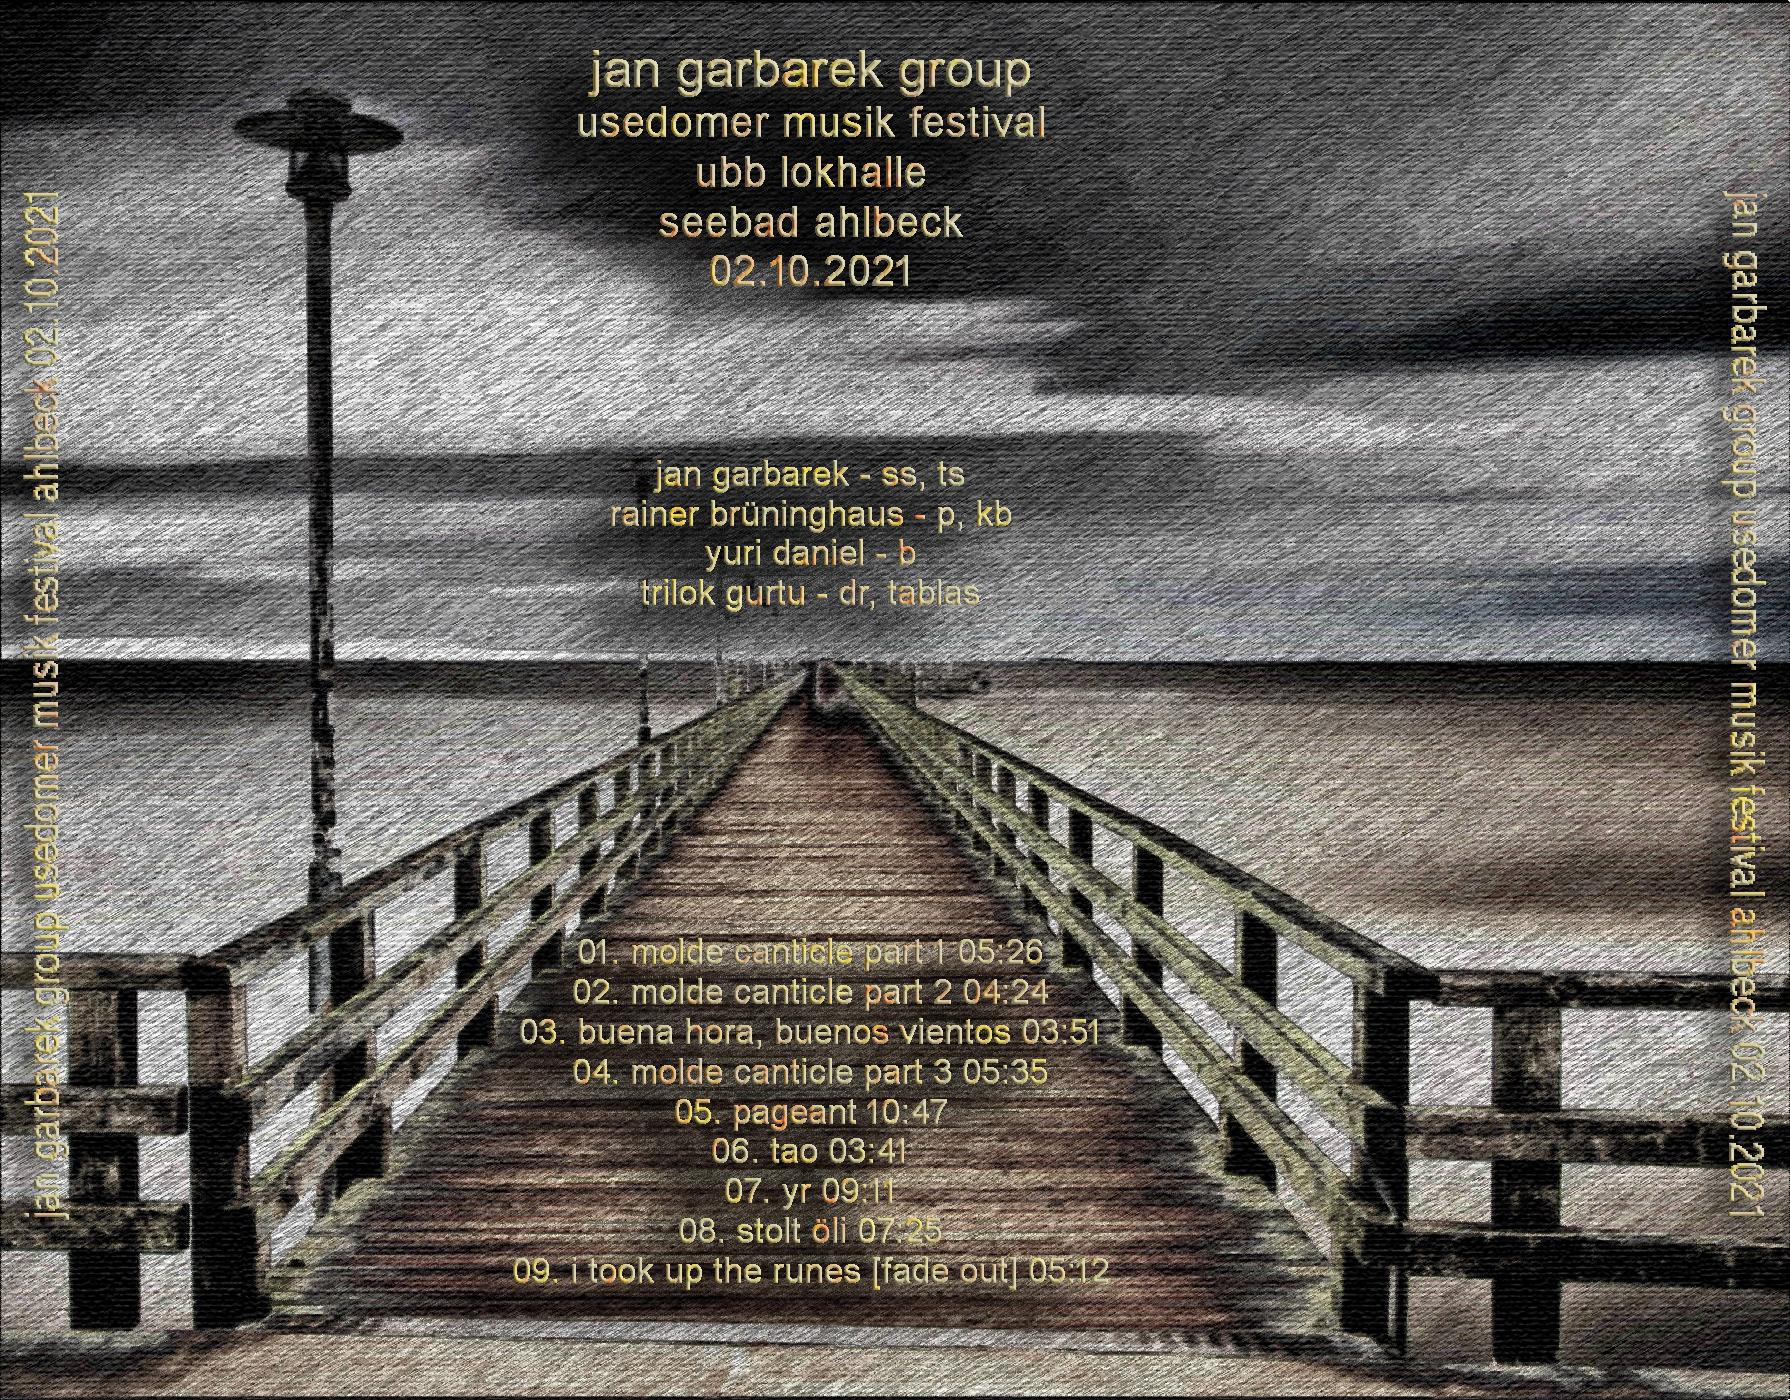 JanGarbarekGroup2021-10-02UsedomerMusikFestivalSeebadAhlbeckGermany (3).jpg